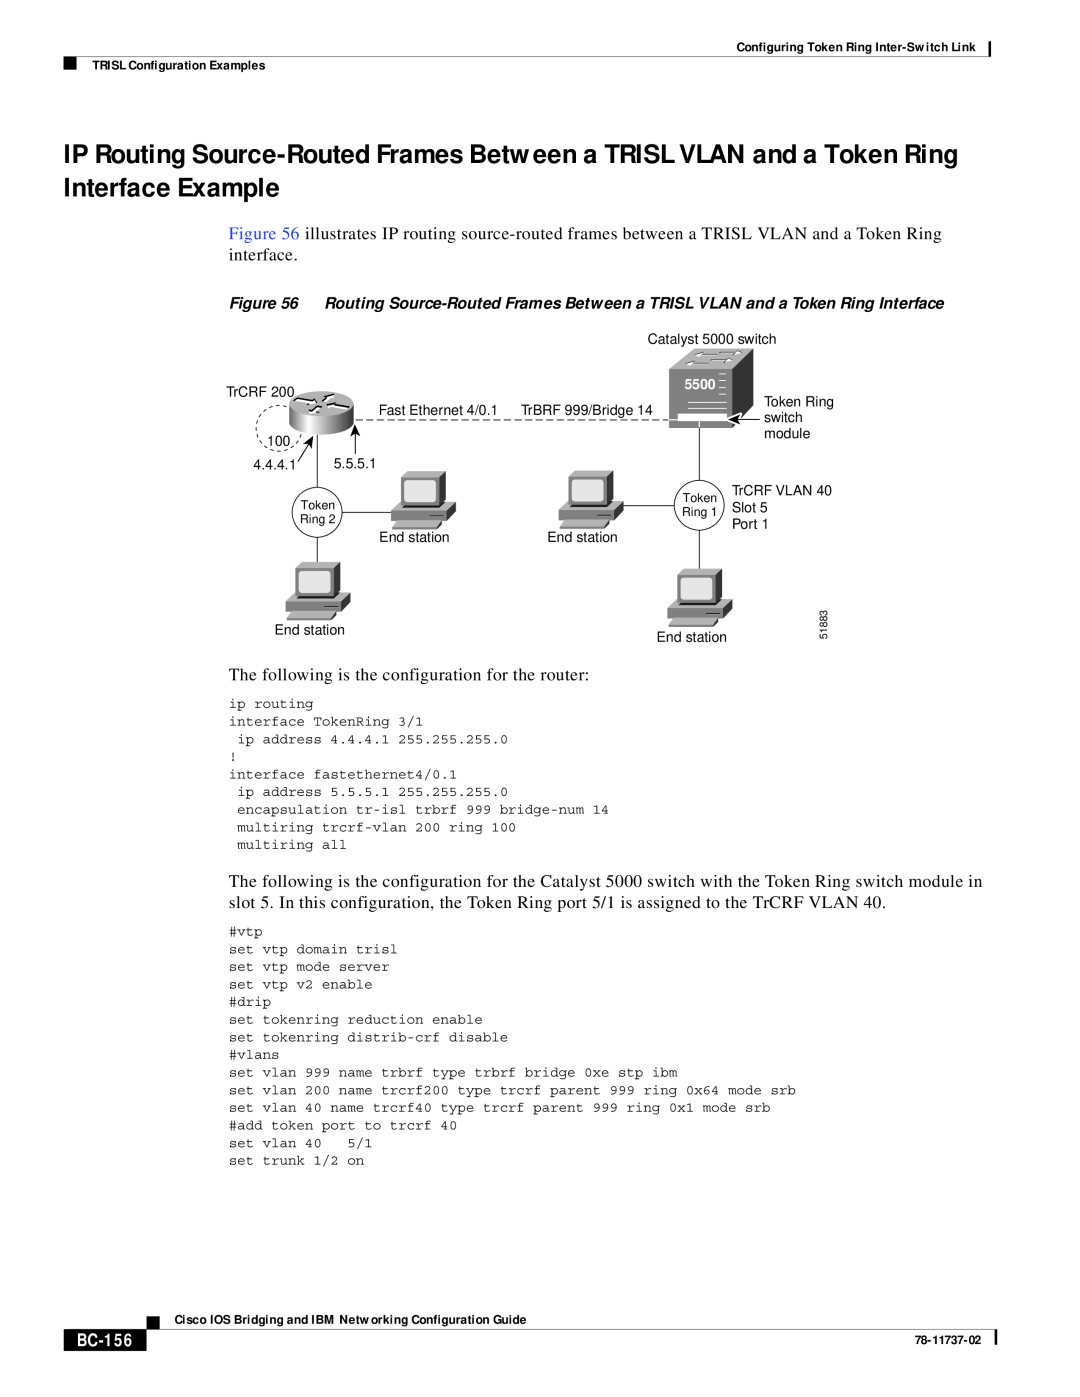 Cisco Systems BC-145 manual BC-156 